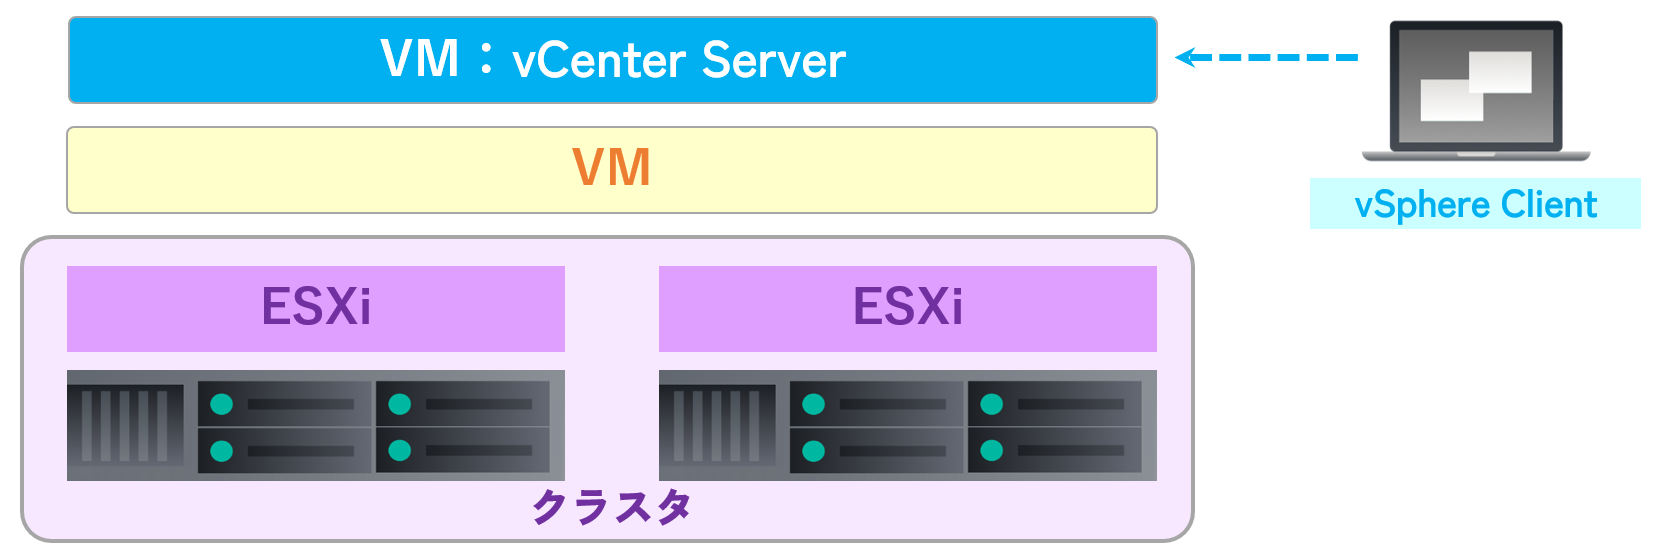 VMware vCenter Server ESXi